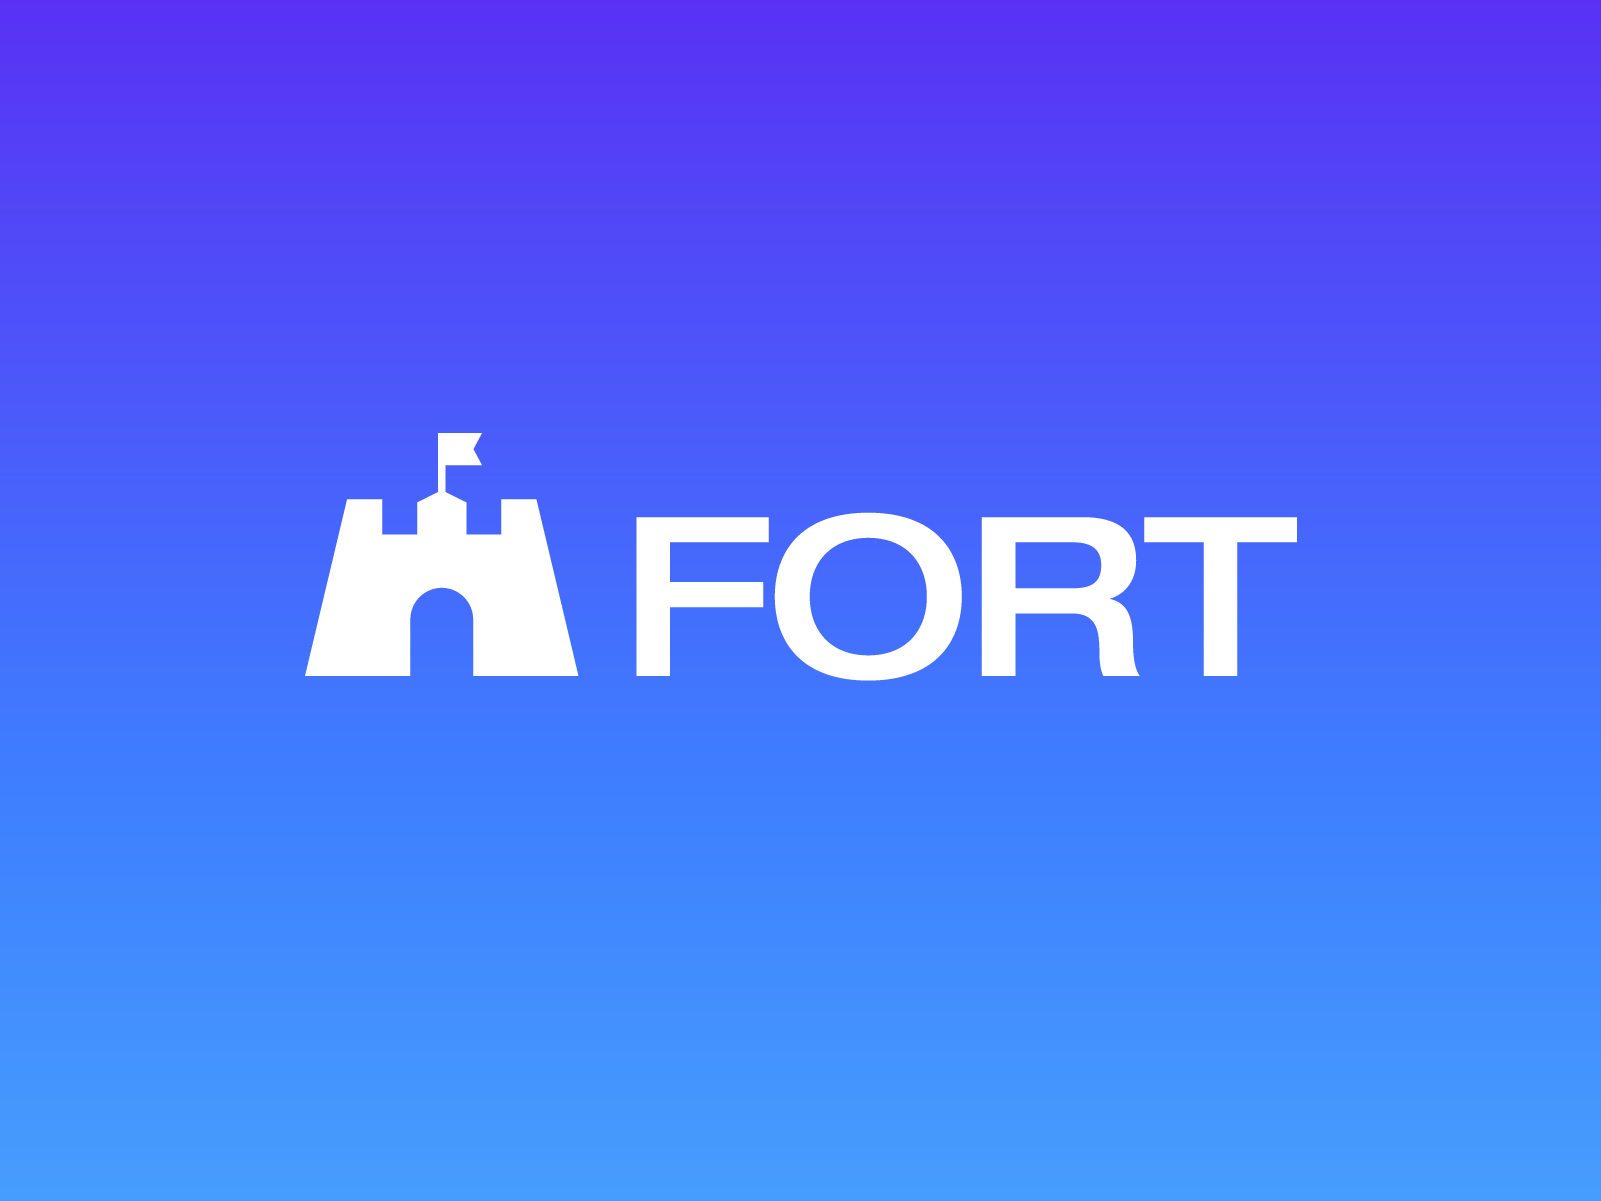 Castle Logo, Logos ft. castle & fort - Envato Elements